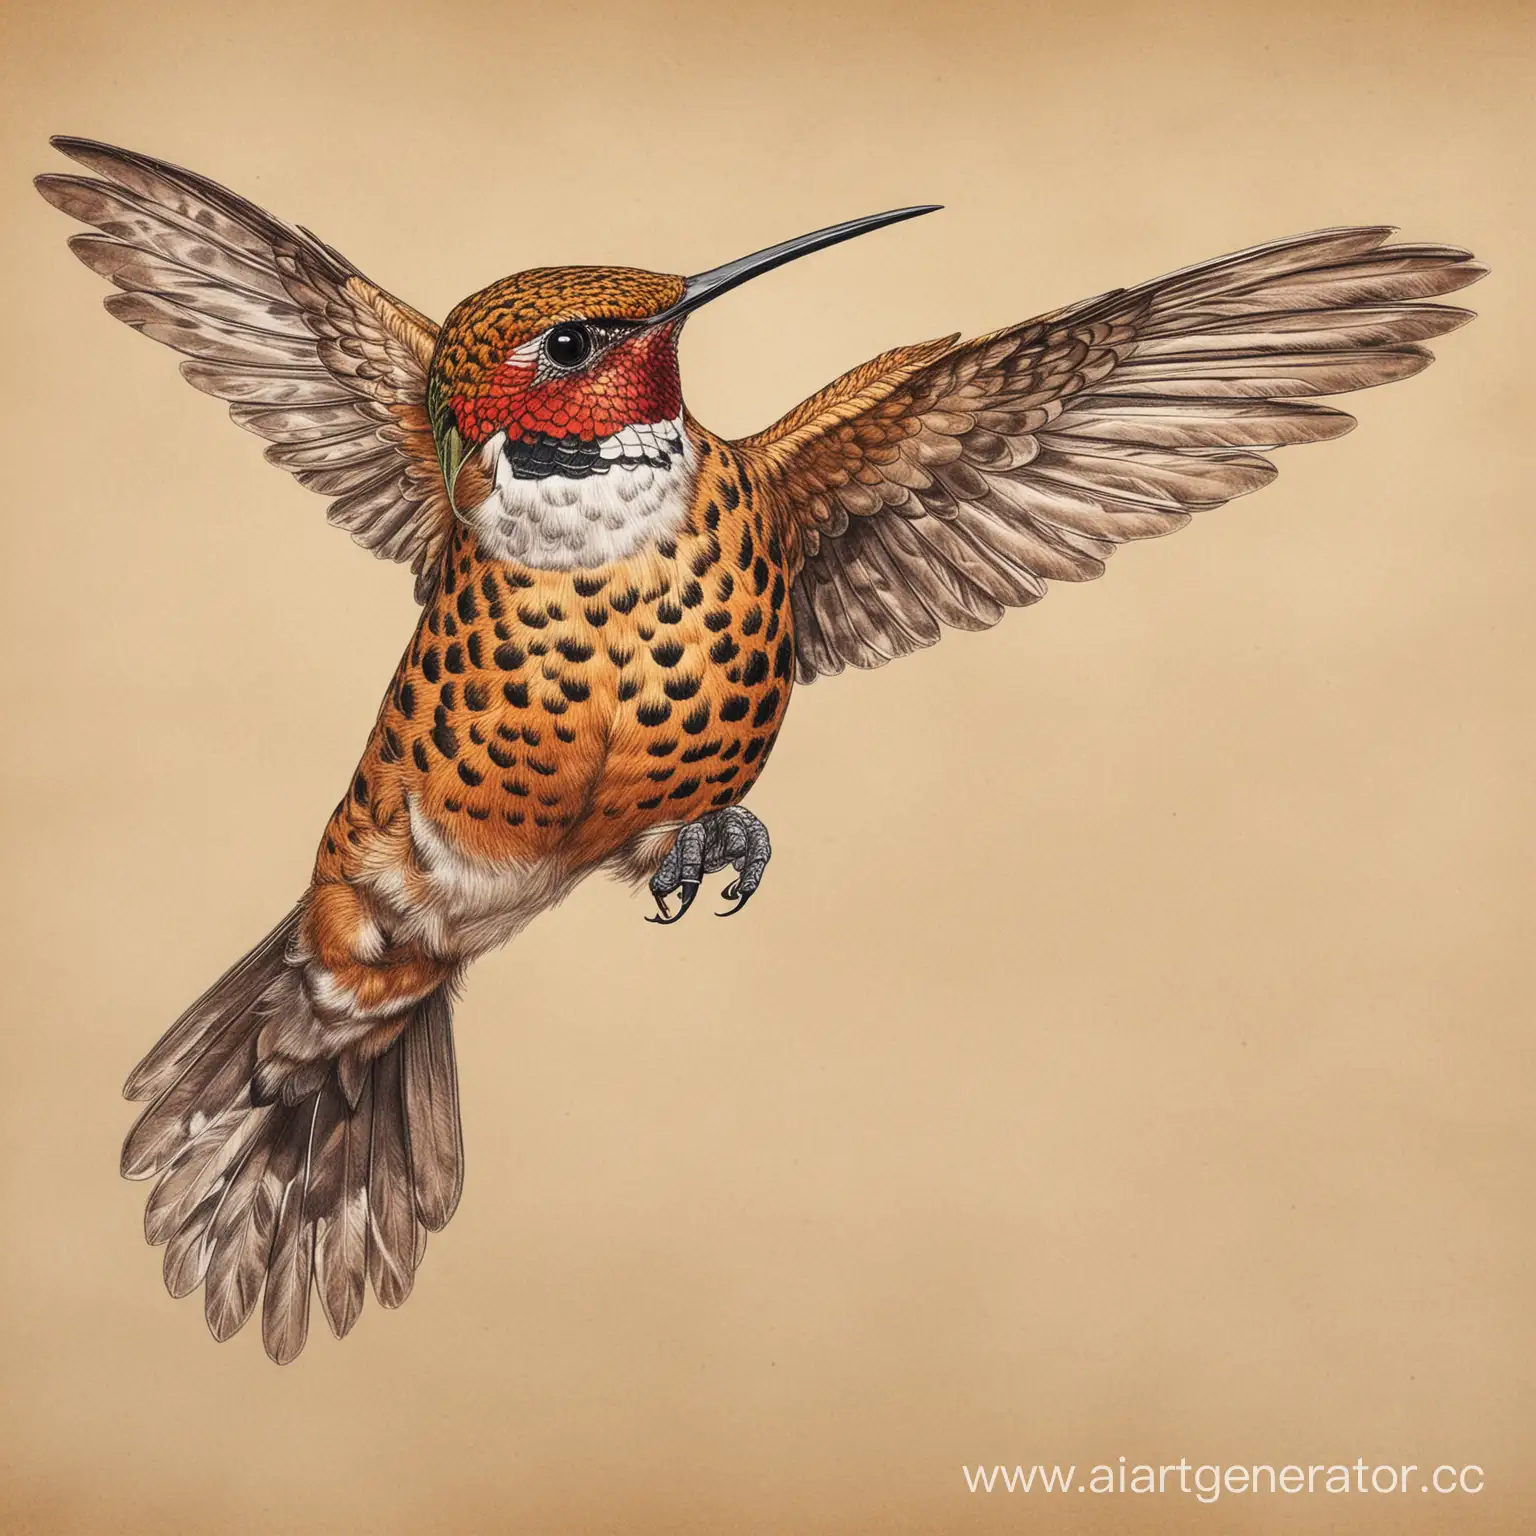 Hummingbird-Artfully-Integrated-into-Jaguar-Form